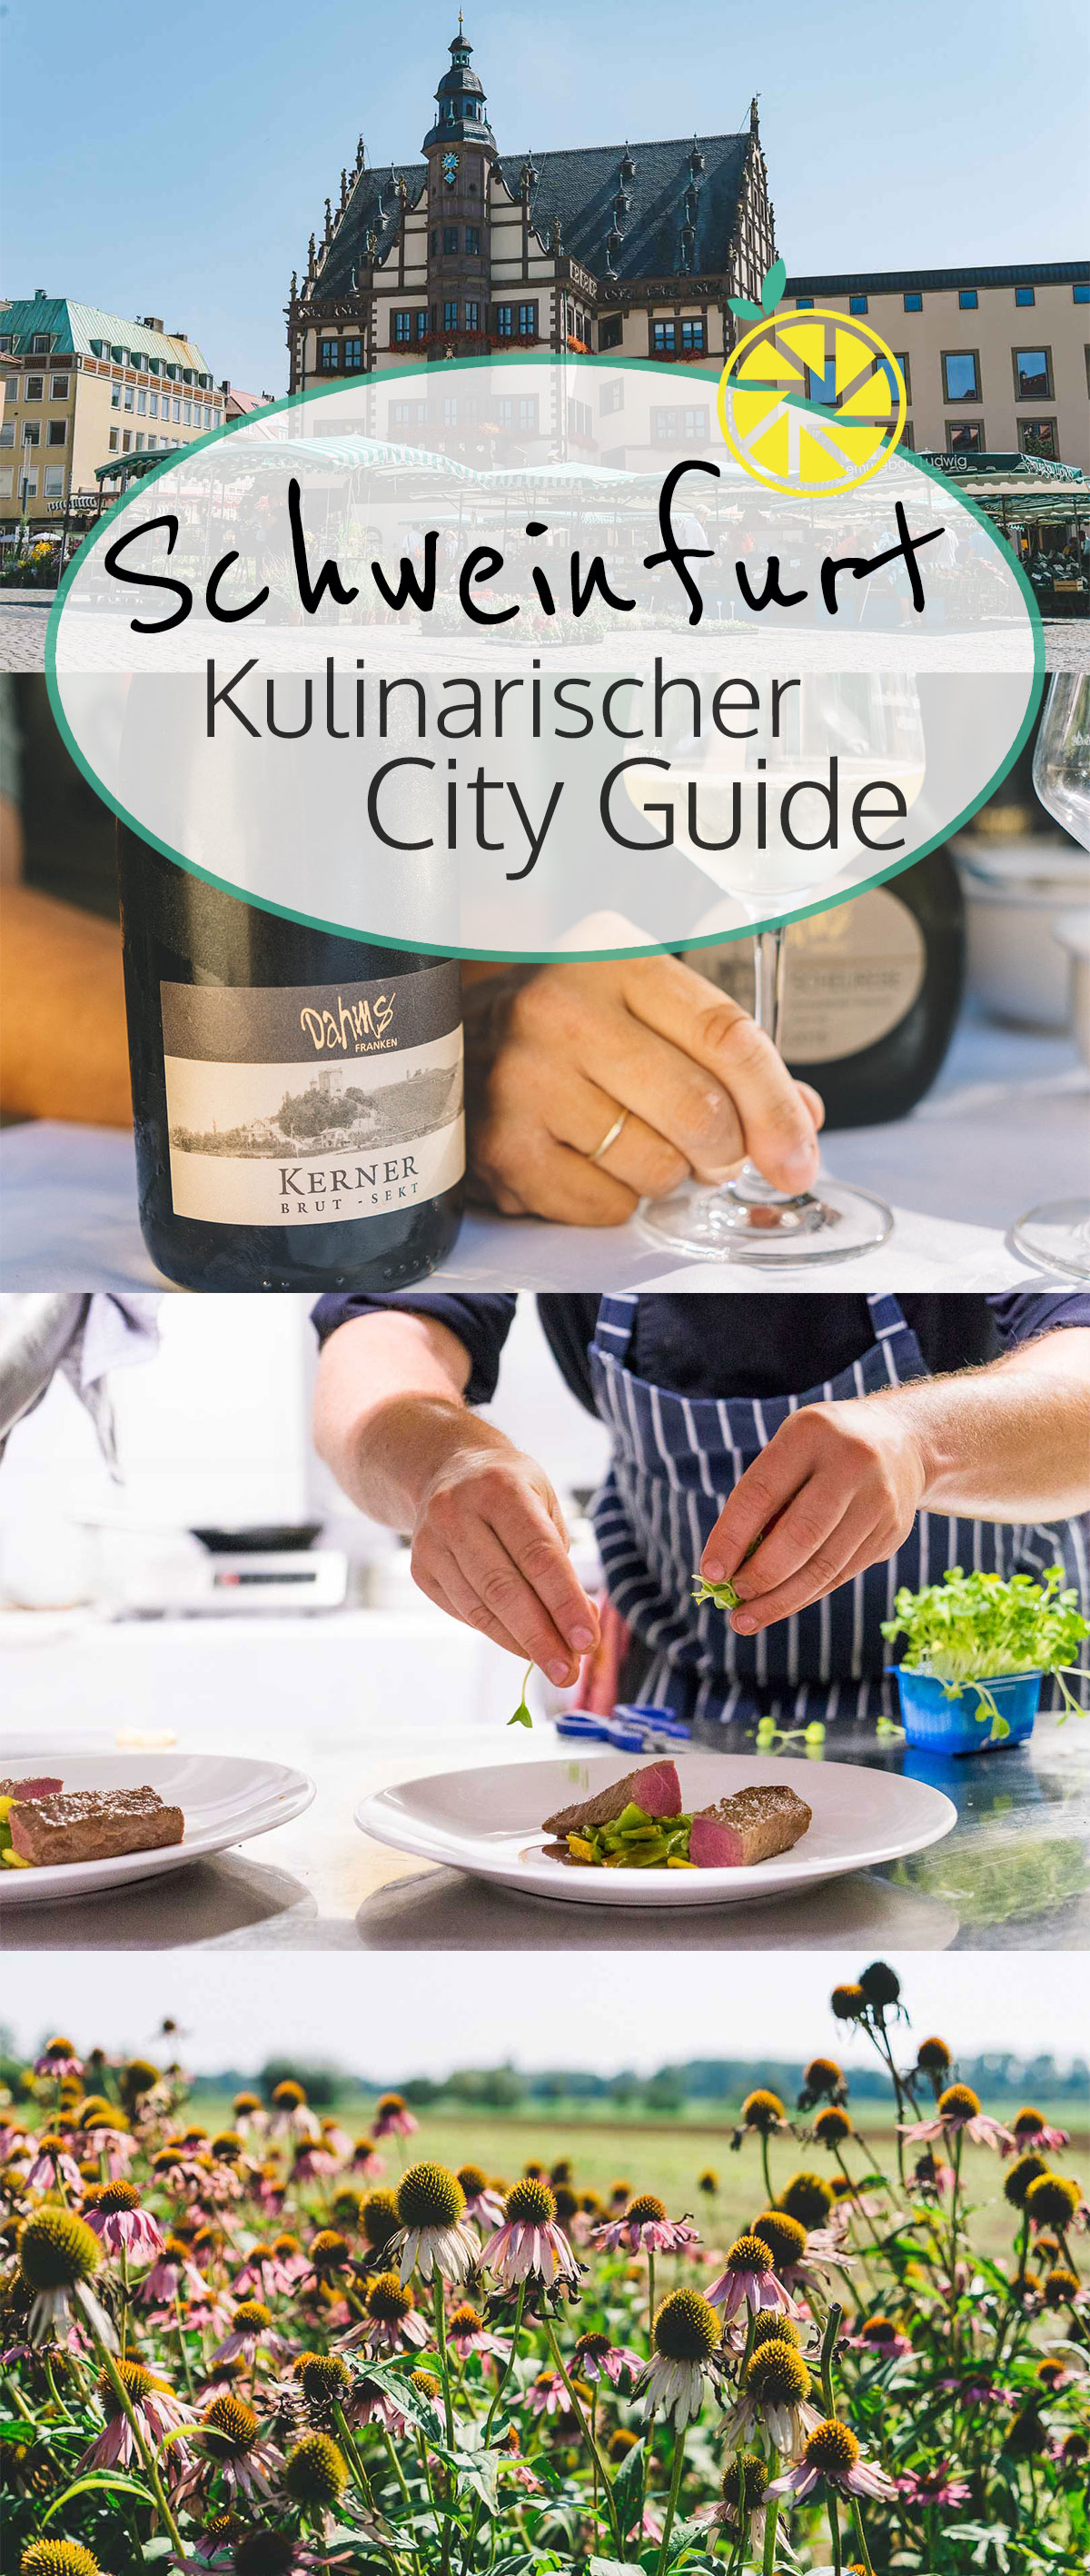 Kulinarischer City Guide Schweinfurt: Restaurants, Aktivitäten & kulinarische Tipps